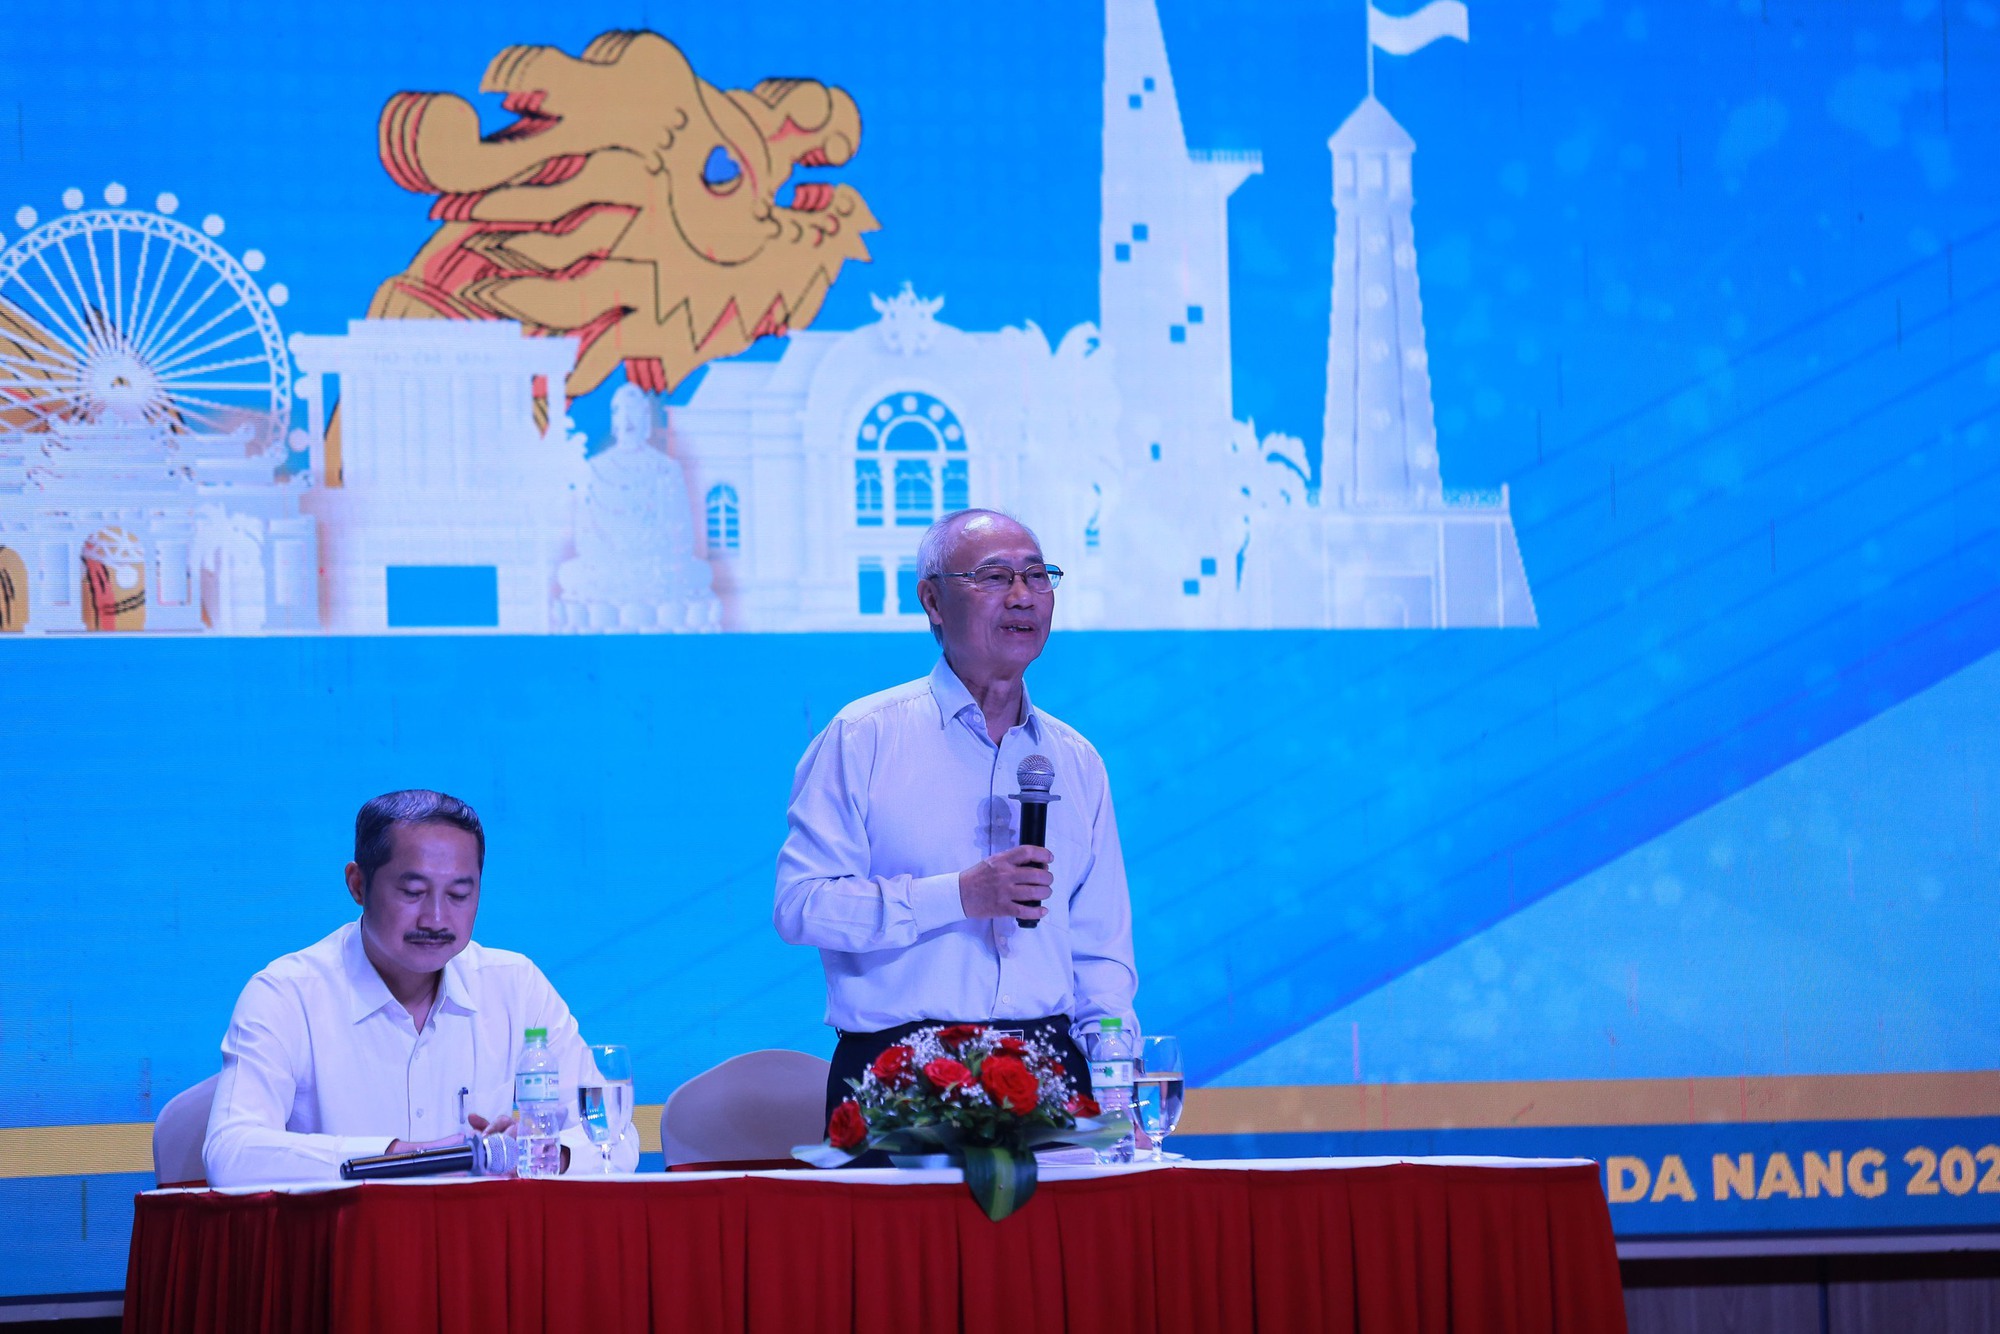 Hội chợ Du lịch quốc tế Đà Nẵng diễn ra từ ngày 9-11/12 - Ảnh 1.